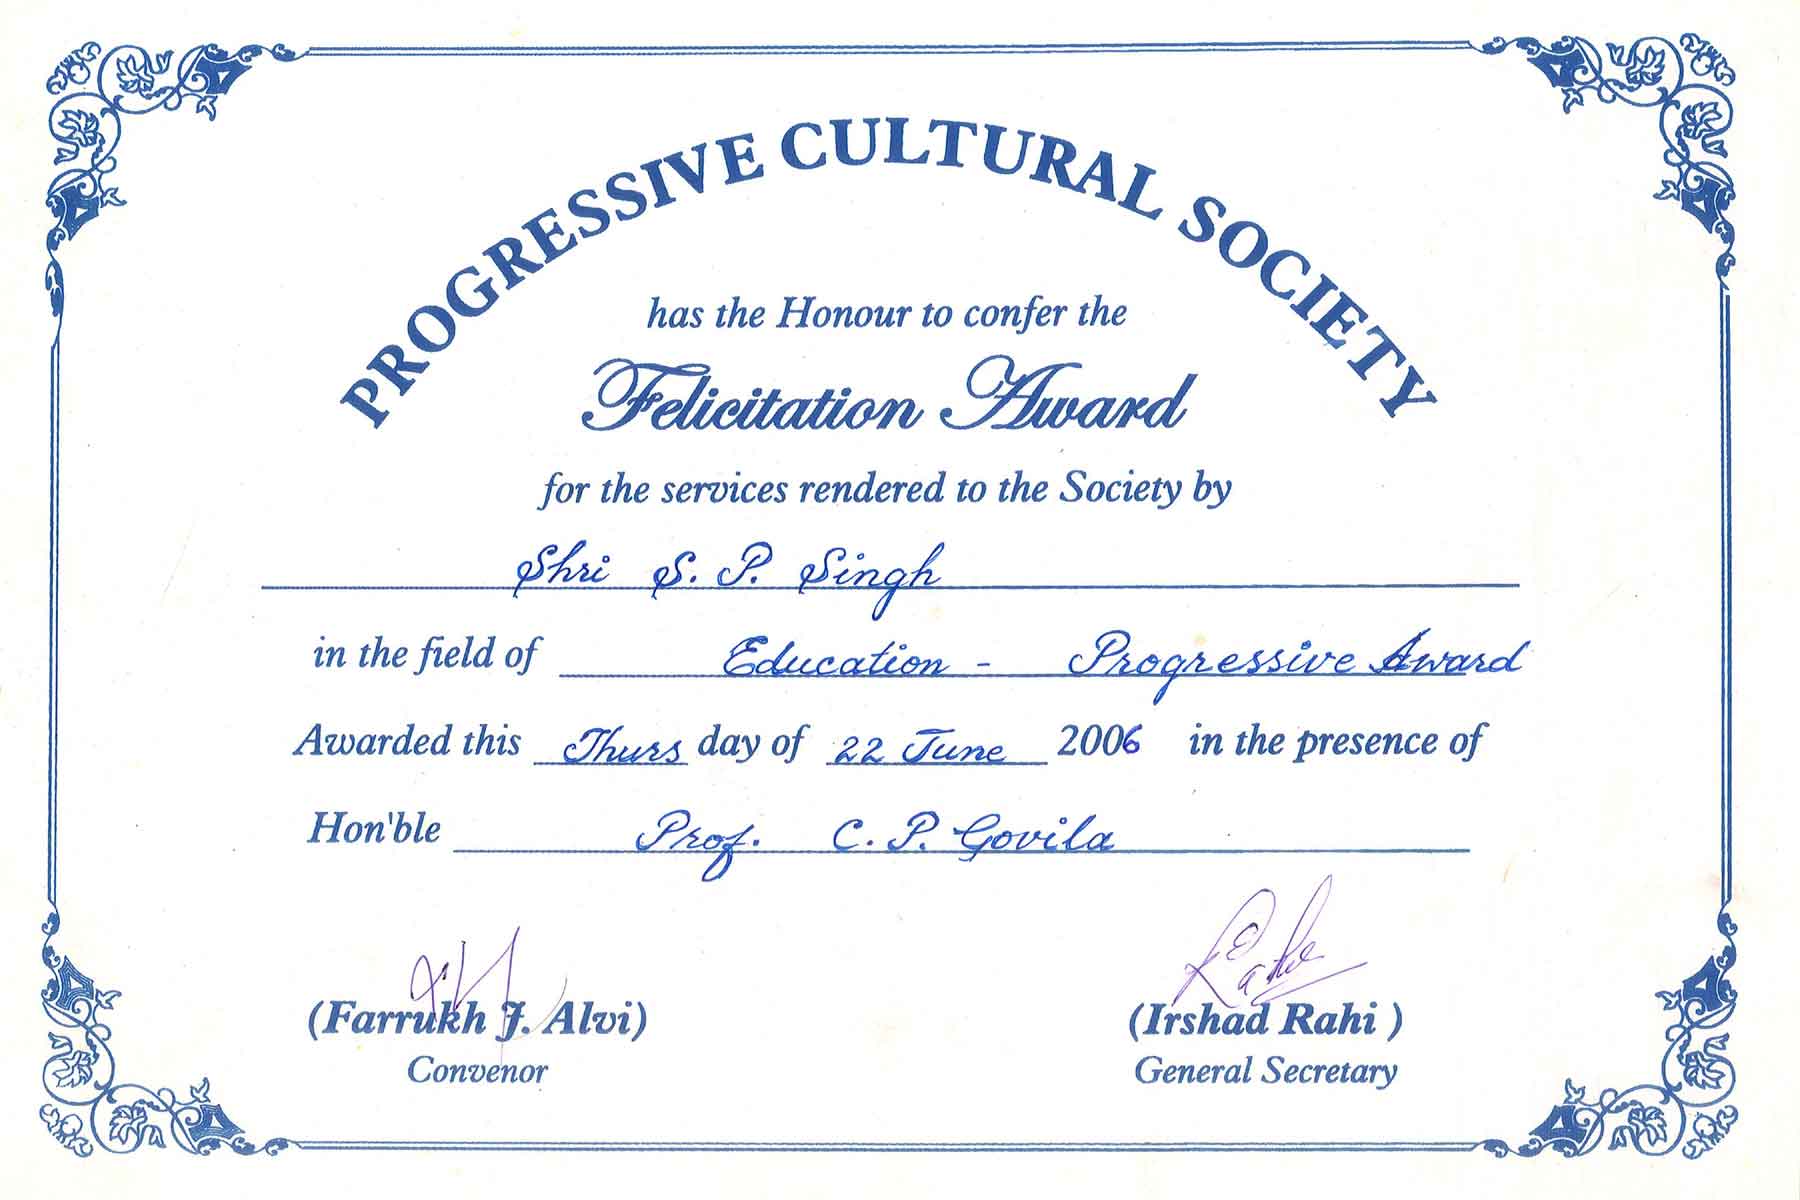 Progressive Cultural Soc